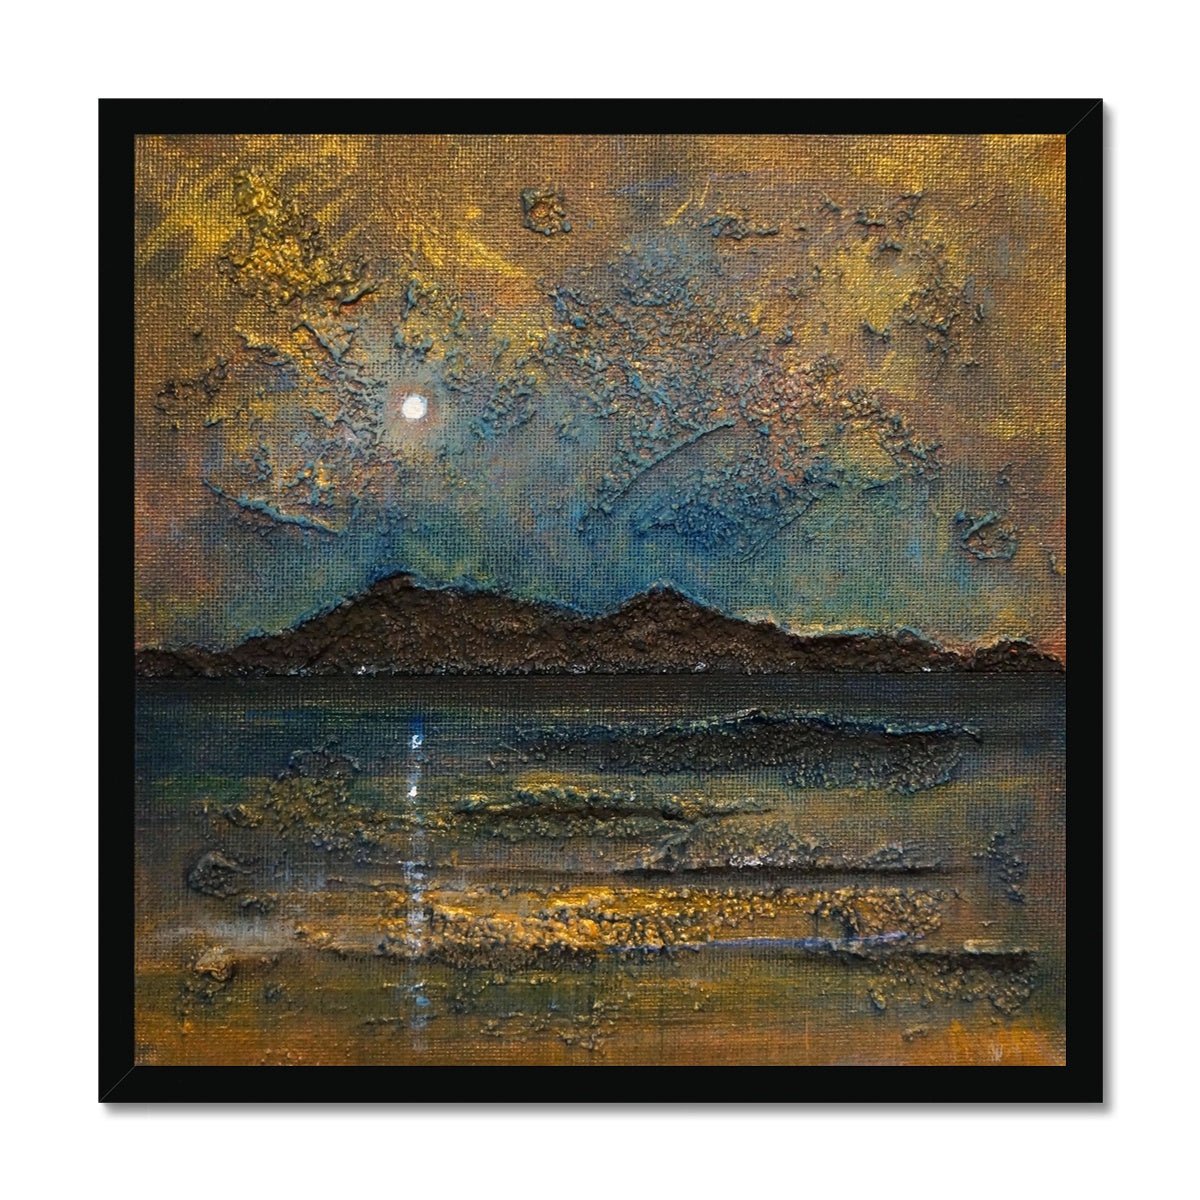 Arran Moonlight Painting | Framed Prints From Scotland-Framed Prints-Arran Art Gallery-20"x20"-Black Frame-Paintings, Prints, Homeware, Art Gifts From Scotland By Scottish Artist Kevin Hunter